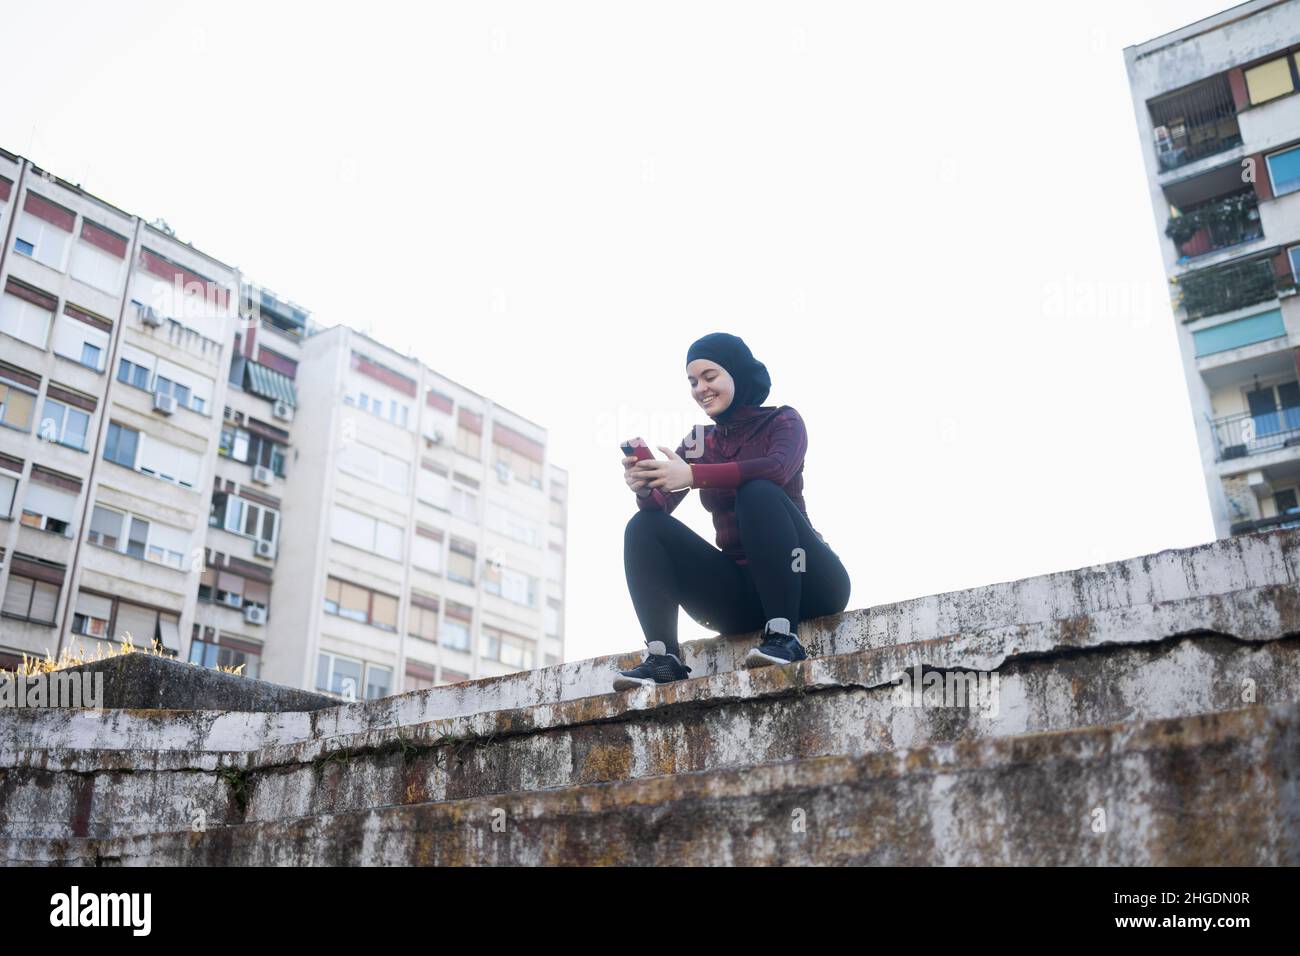 Junge muslimische Frau, die während ihres Trainings im Freien eine Telefonpause einlegen musste Stockfoto